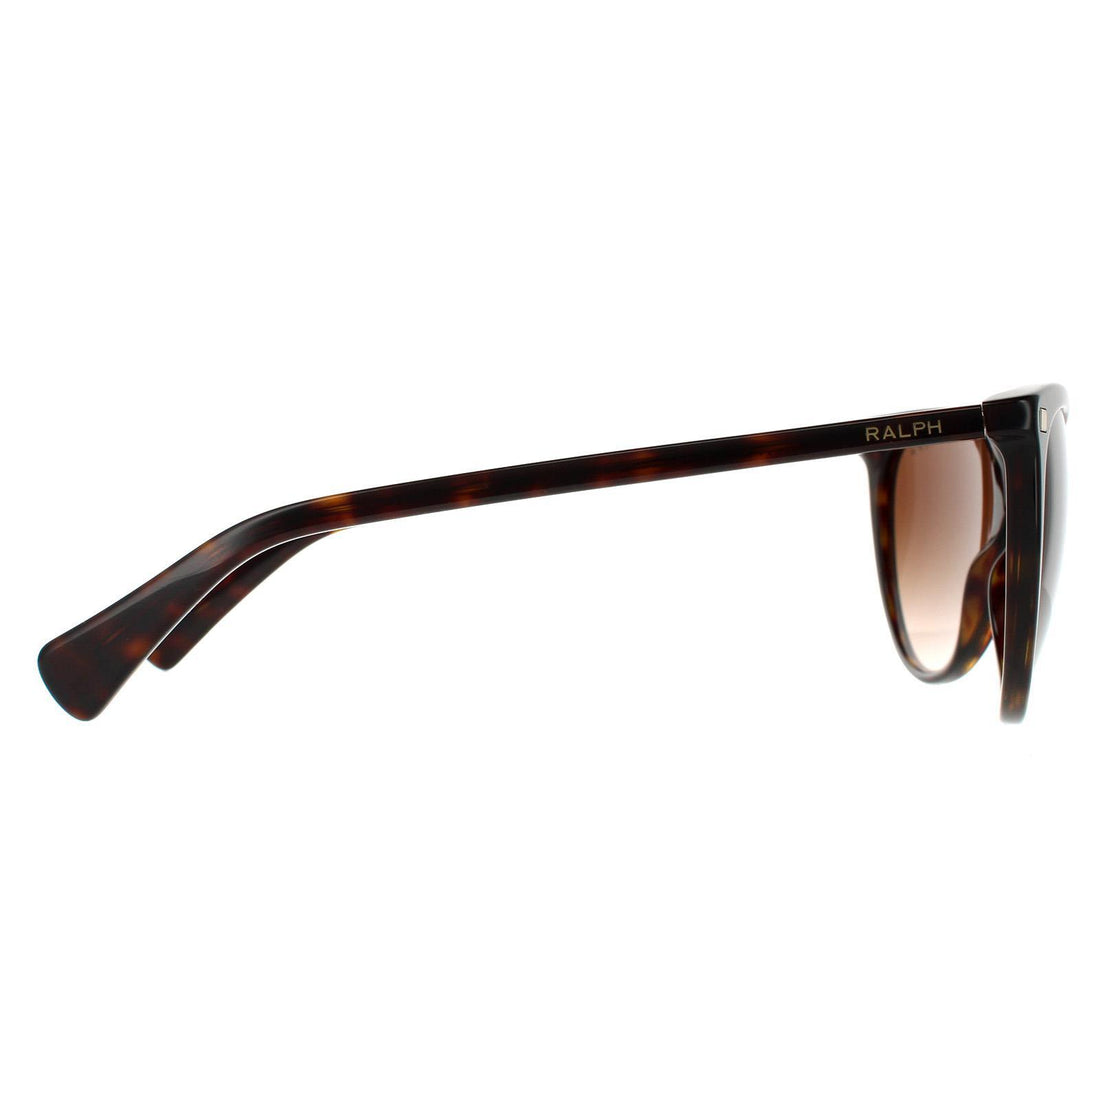 Ralph by Ralph Lauren RA5270 Sunglasses